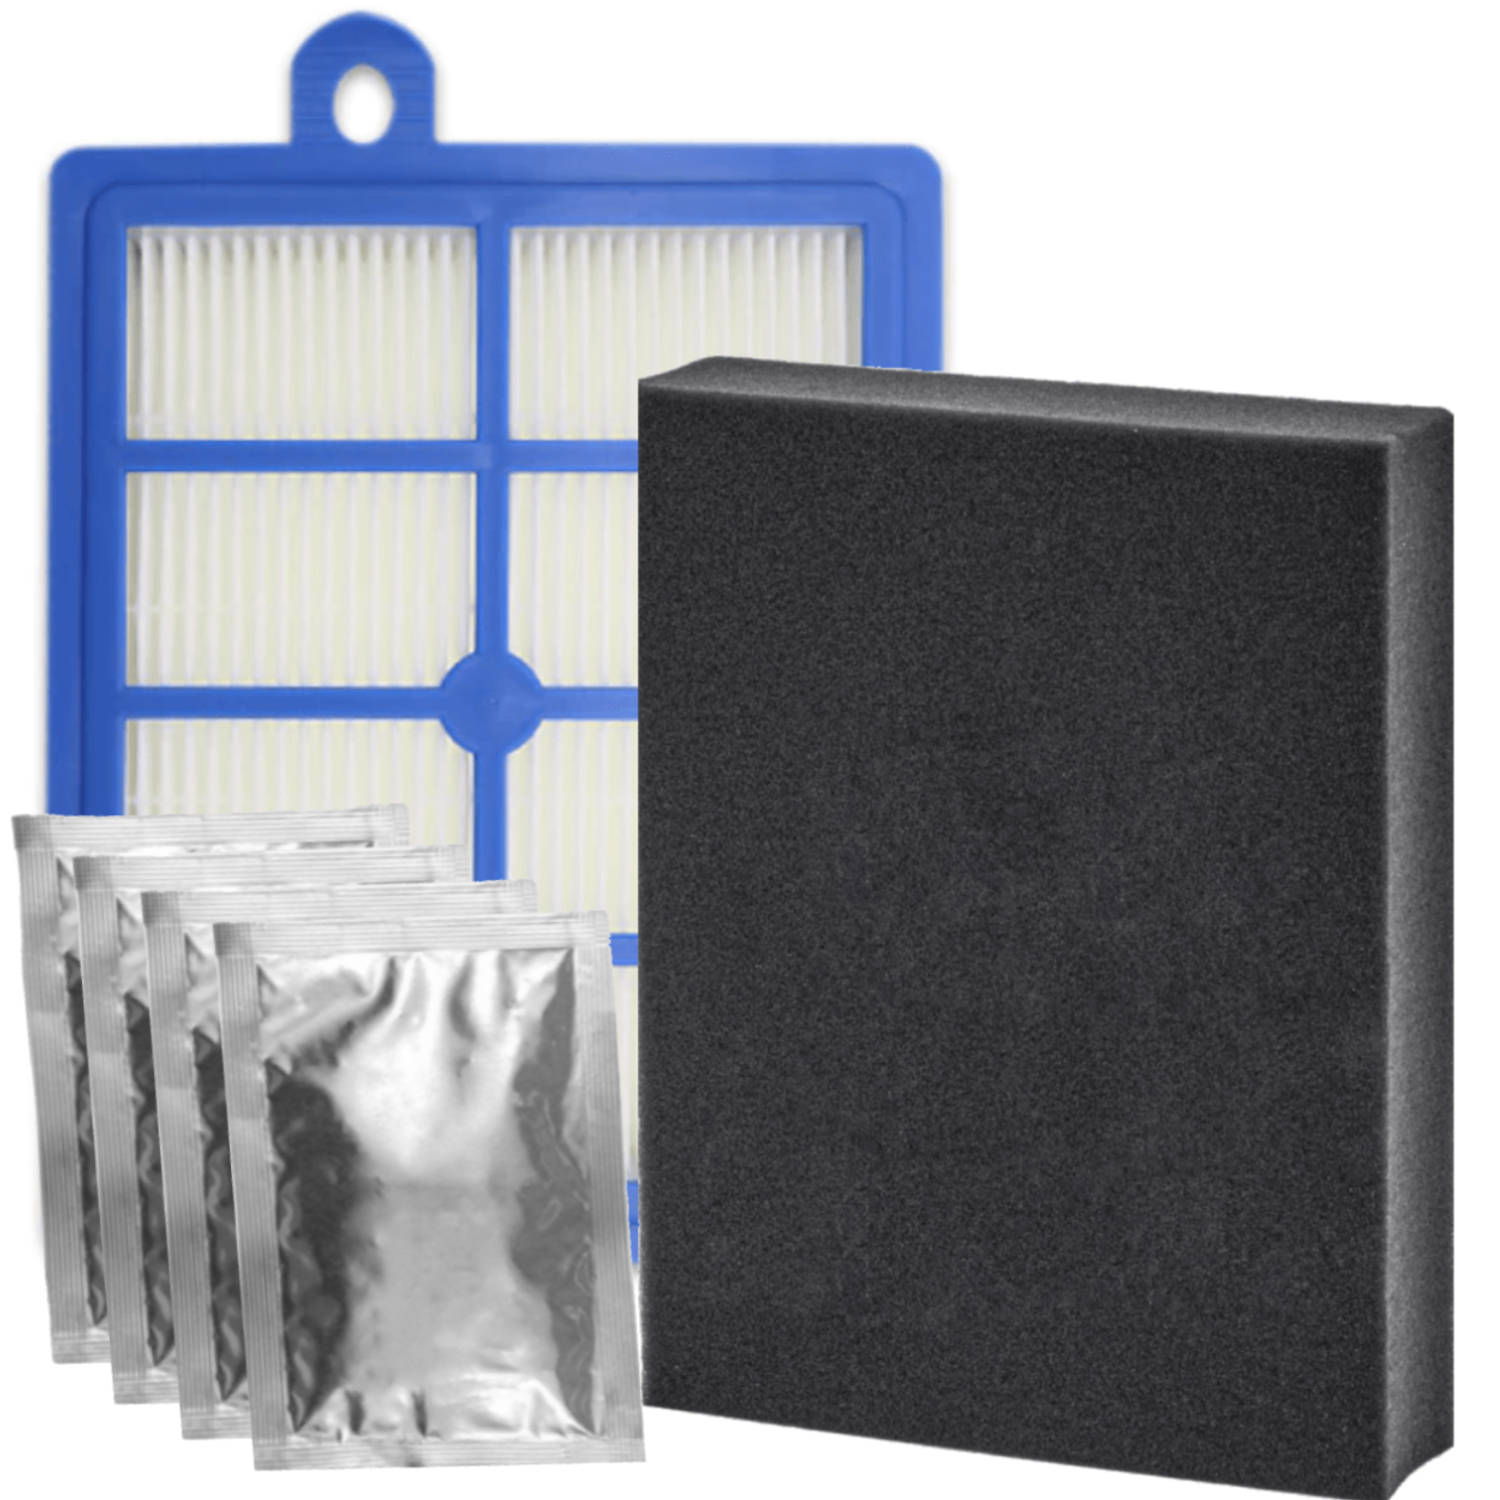 Filterset geschikt voor AEG LX7 en LX8 series - HEPA filter, geurzakjes, schuimfilter - stofzuiger allergiefilter - Vervangt AUSK11 starter kit FC8031/01 1184255014 7321423161707